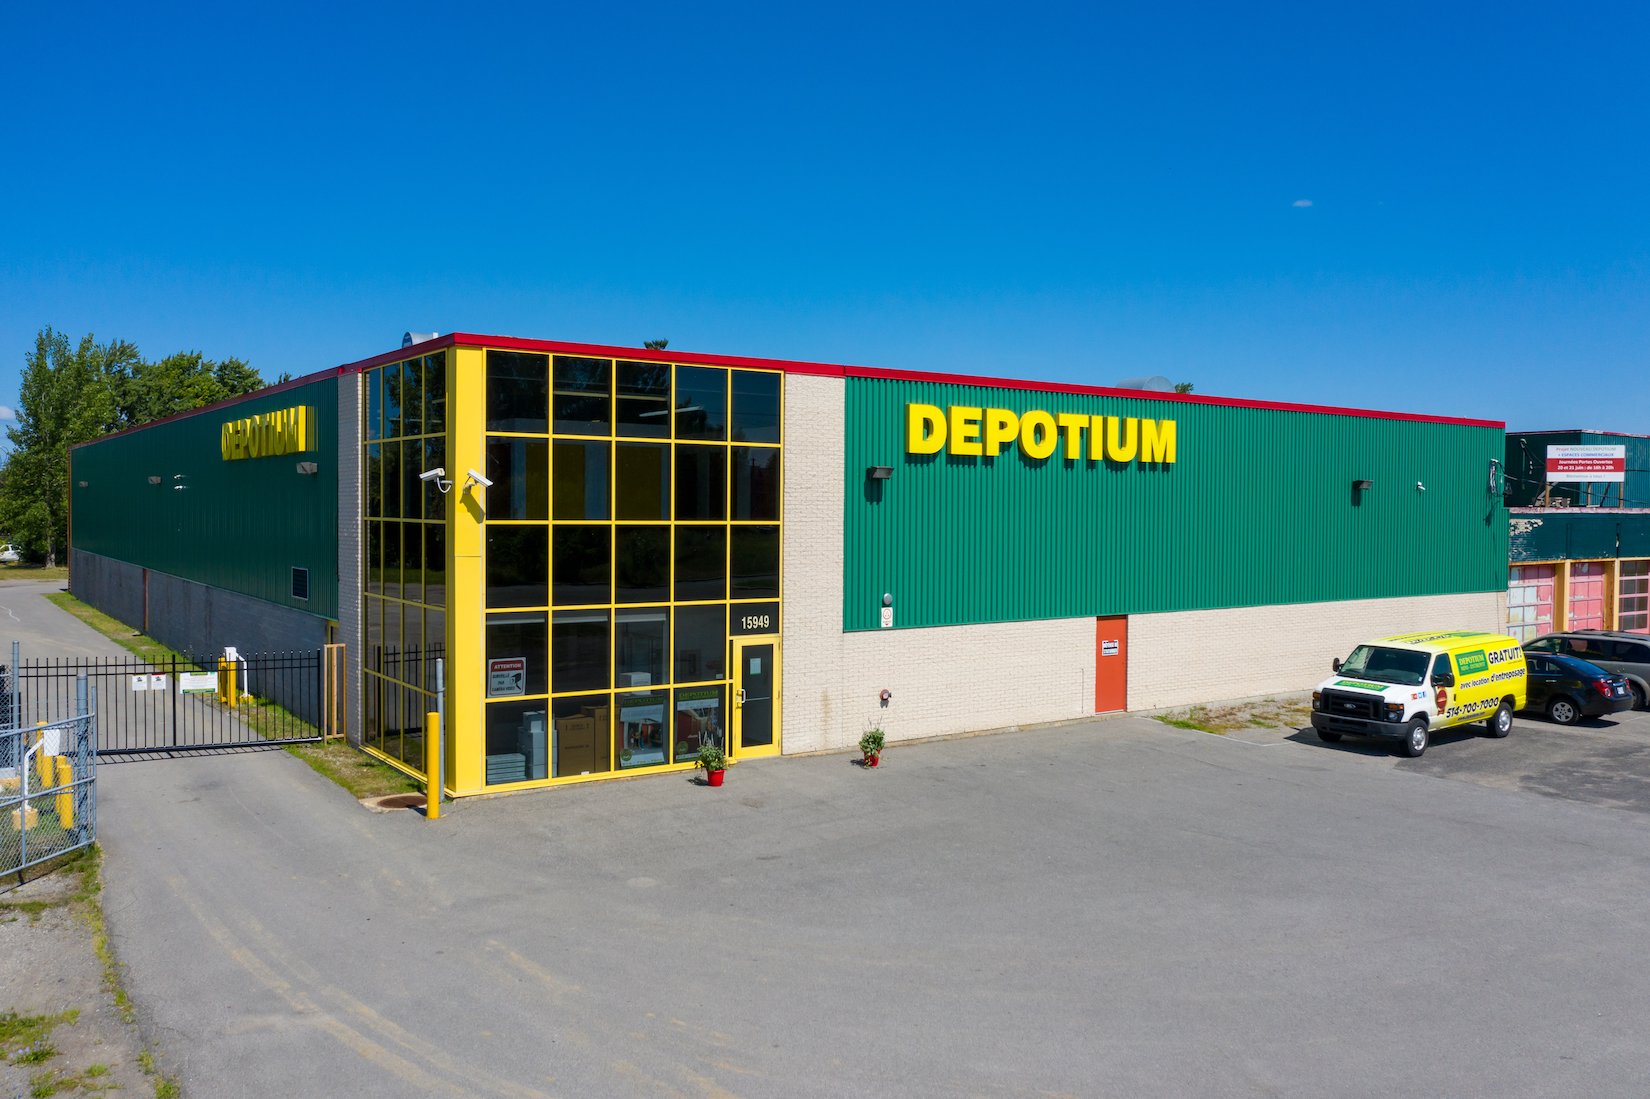 Depotium Mini Entrepôt - Pointes-aux-Trembles Montréal (514)700-5141